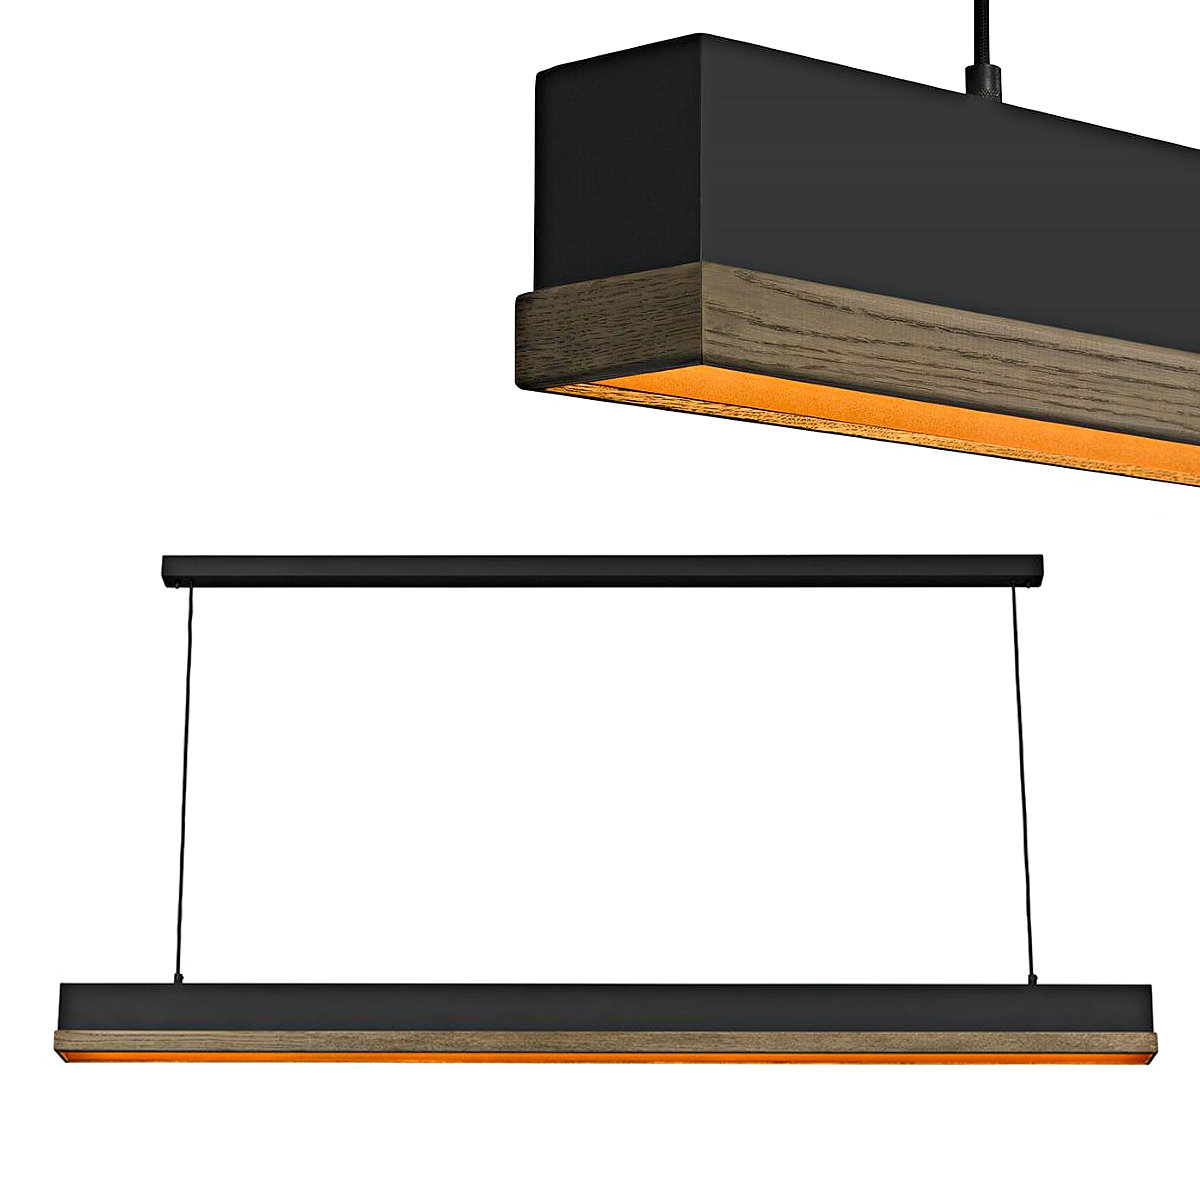 Lange LED-Hängeleuchte SIVANO mit Holzleiste: Lange LED-Hängeleuchte mit hellem Echtholz-Furnier – ideal für die Koch-Insel oder Theken oder lange Tische